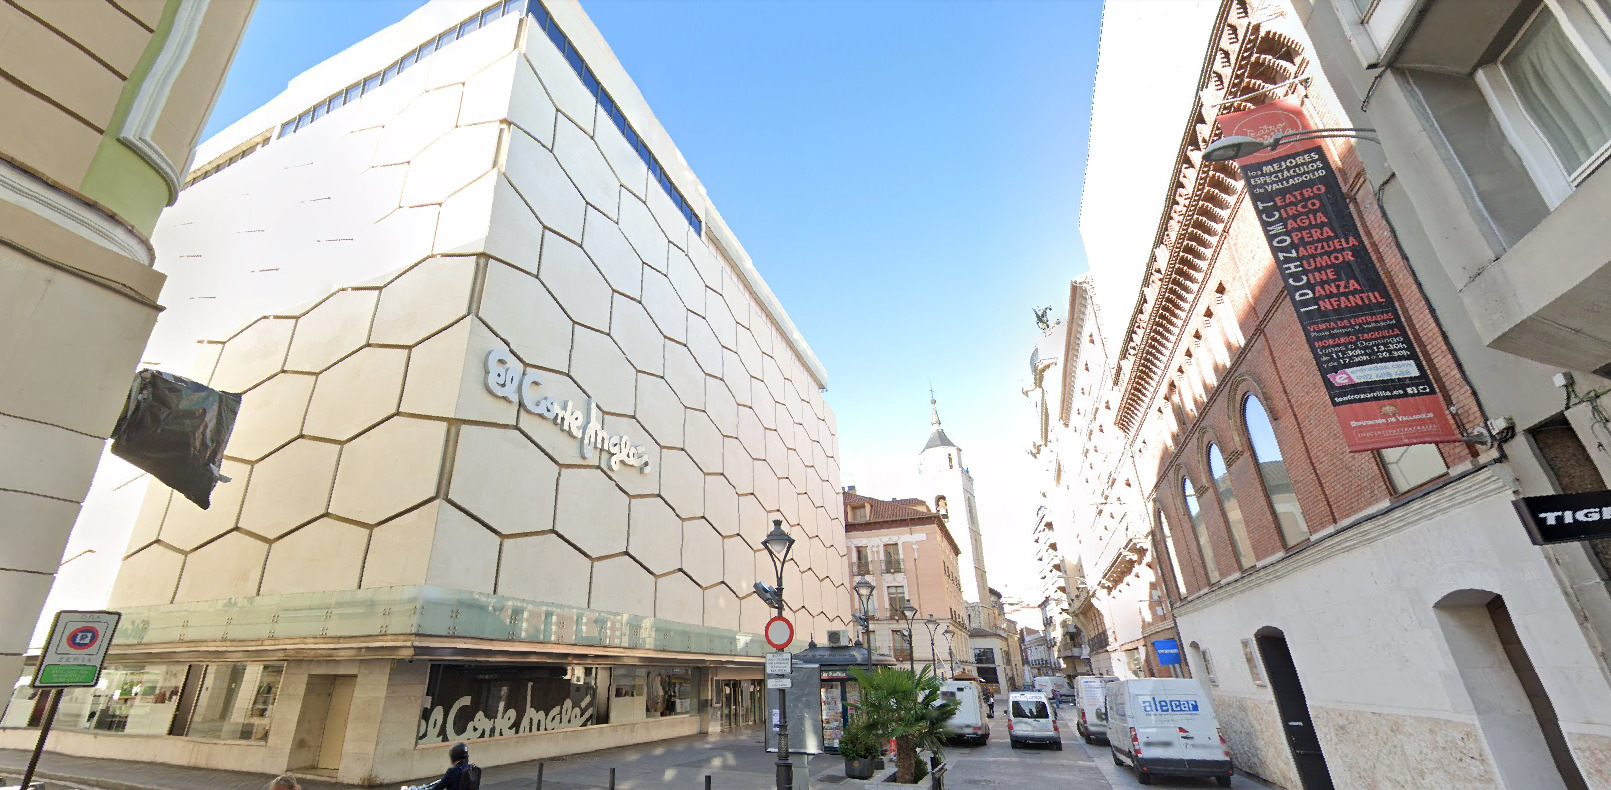 El Corte Inglés ubicado en la calle Constitución de Valladolid. Google Maps.